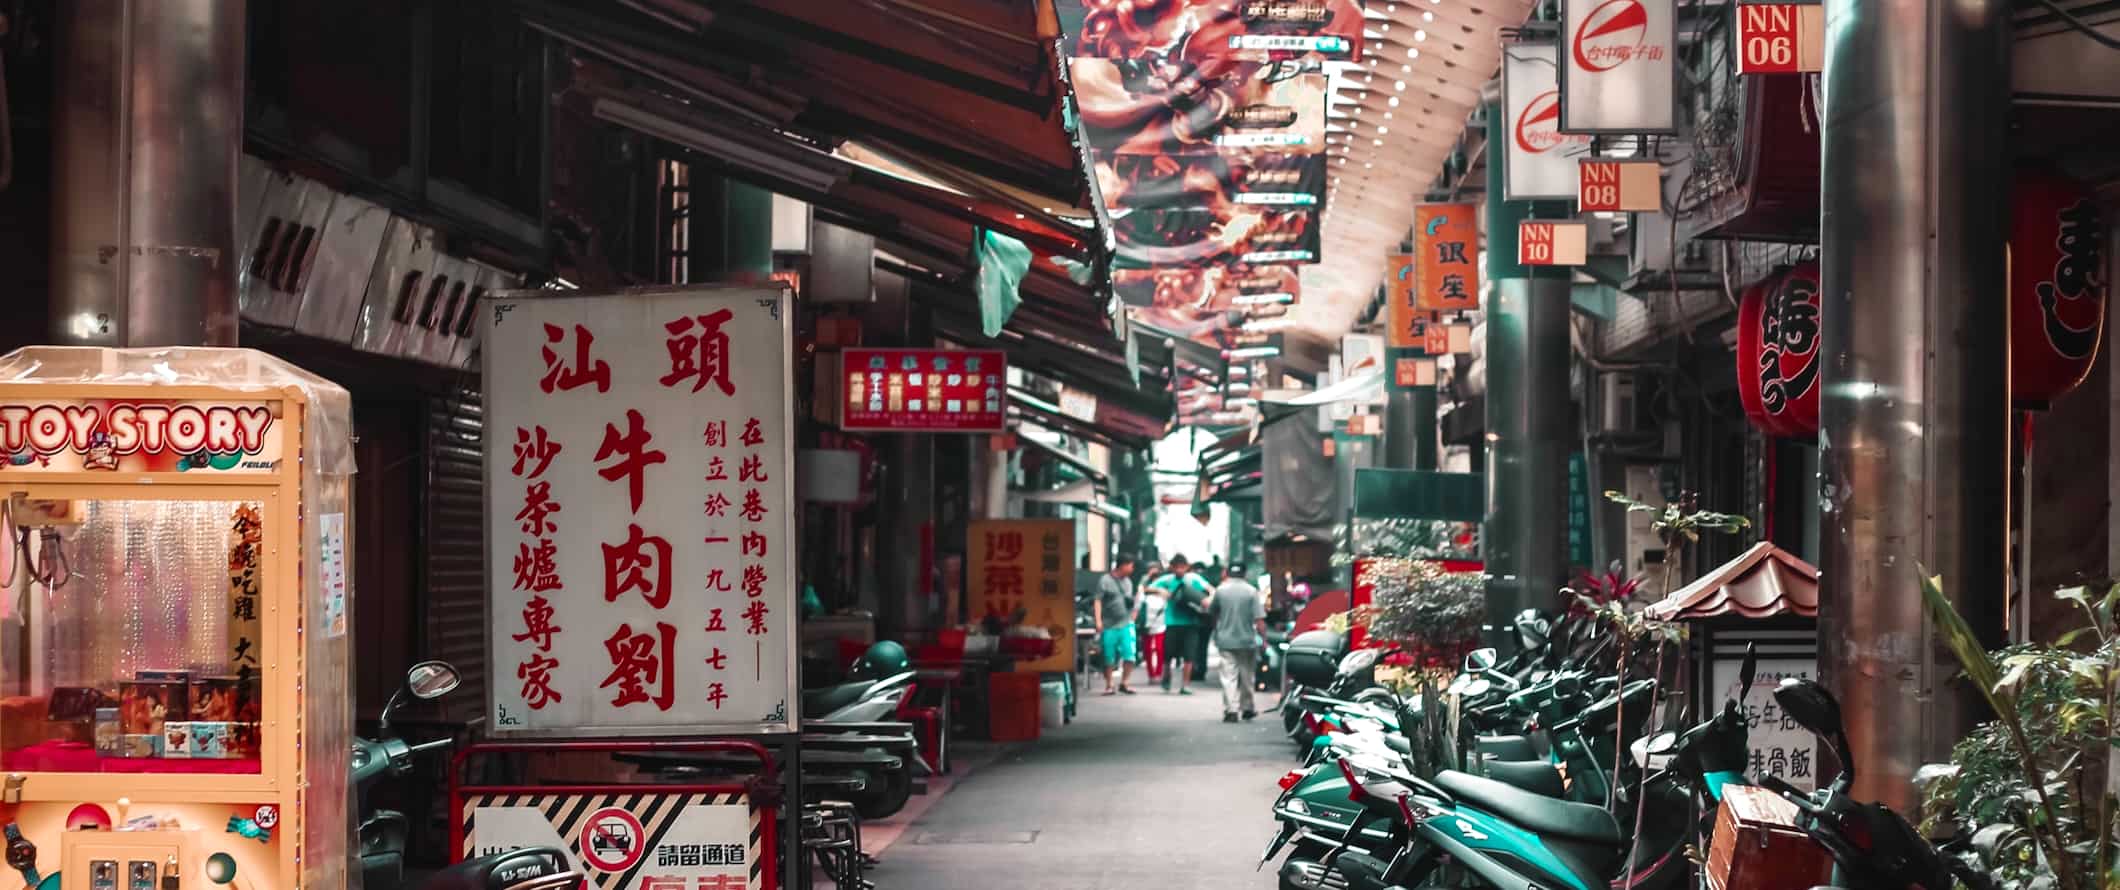 Uma rua estreita repleta de scooters e lojas na movimentada Taiwan